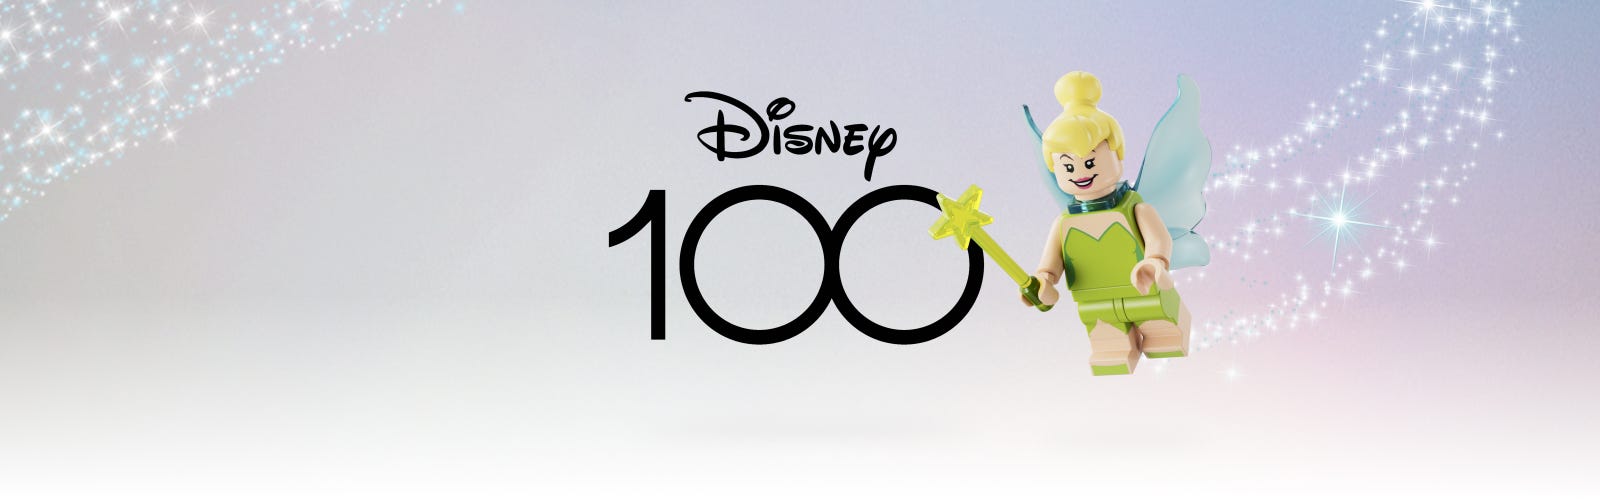 La- Haut - Bande-annonce officielle I Disney 